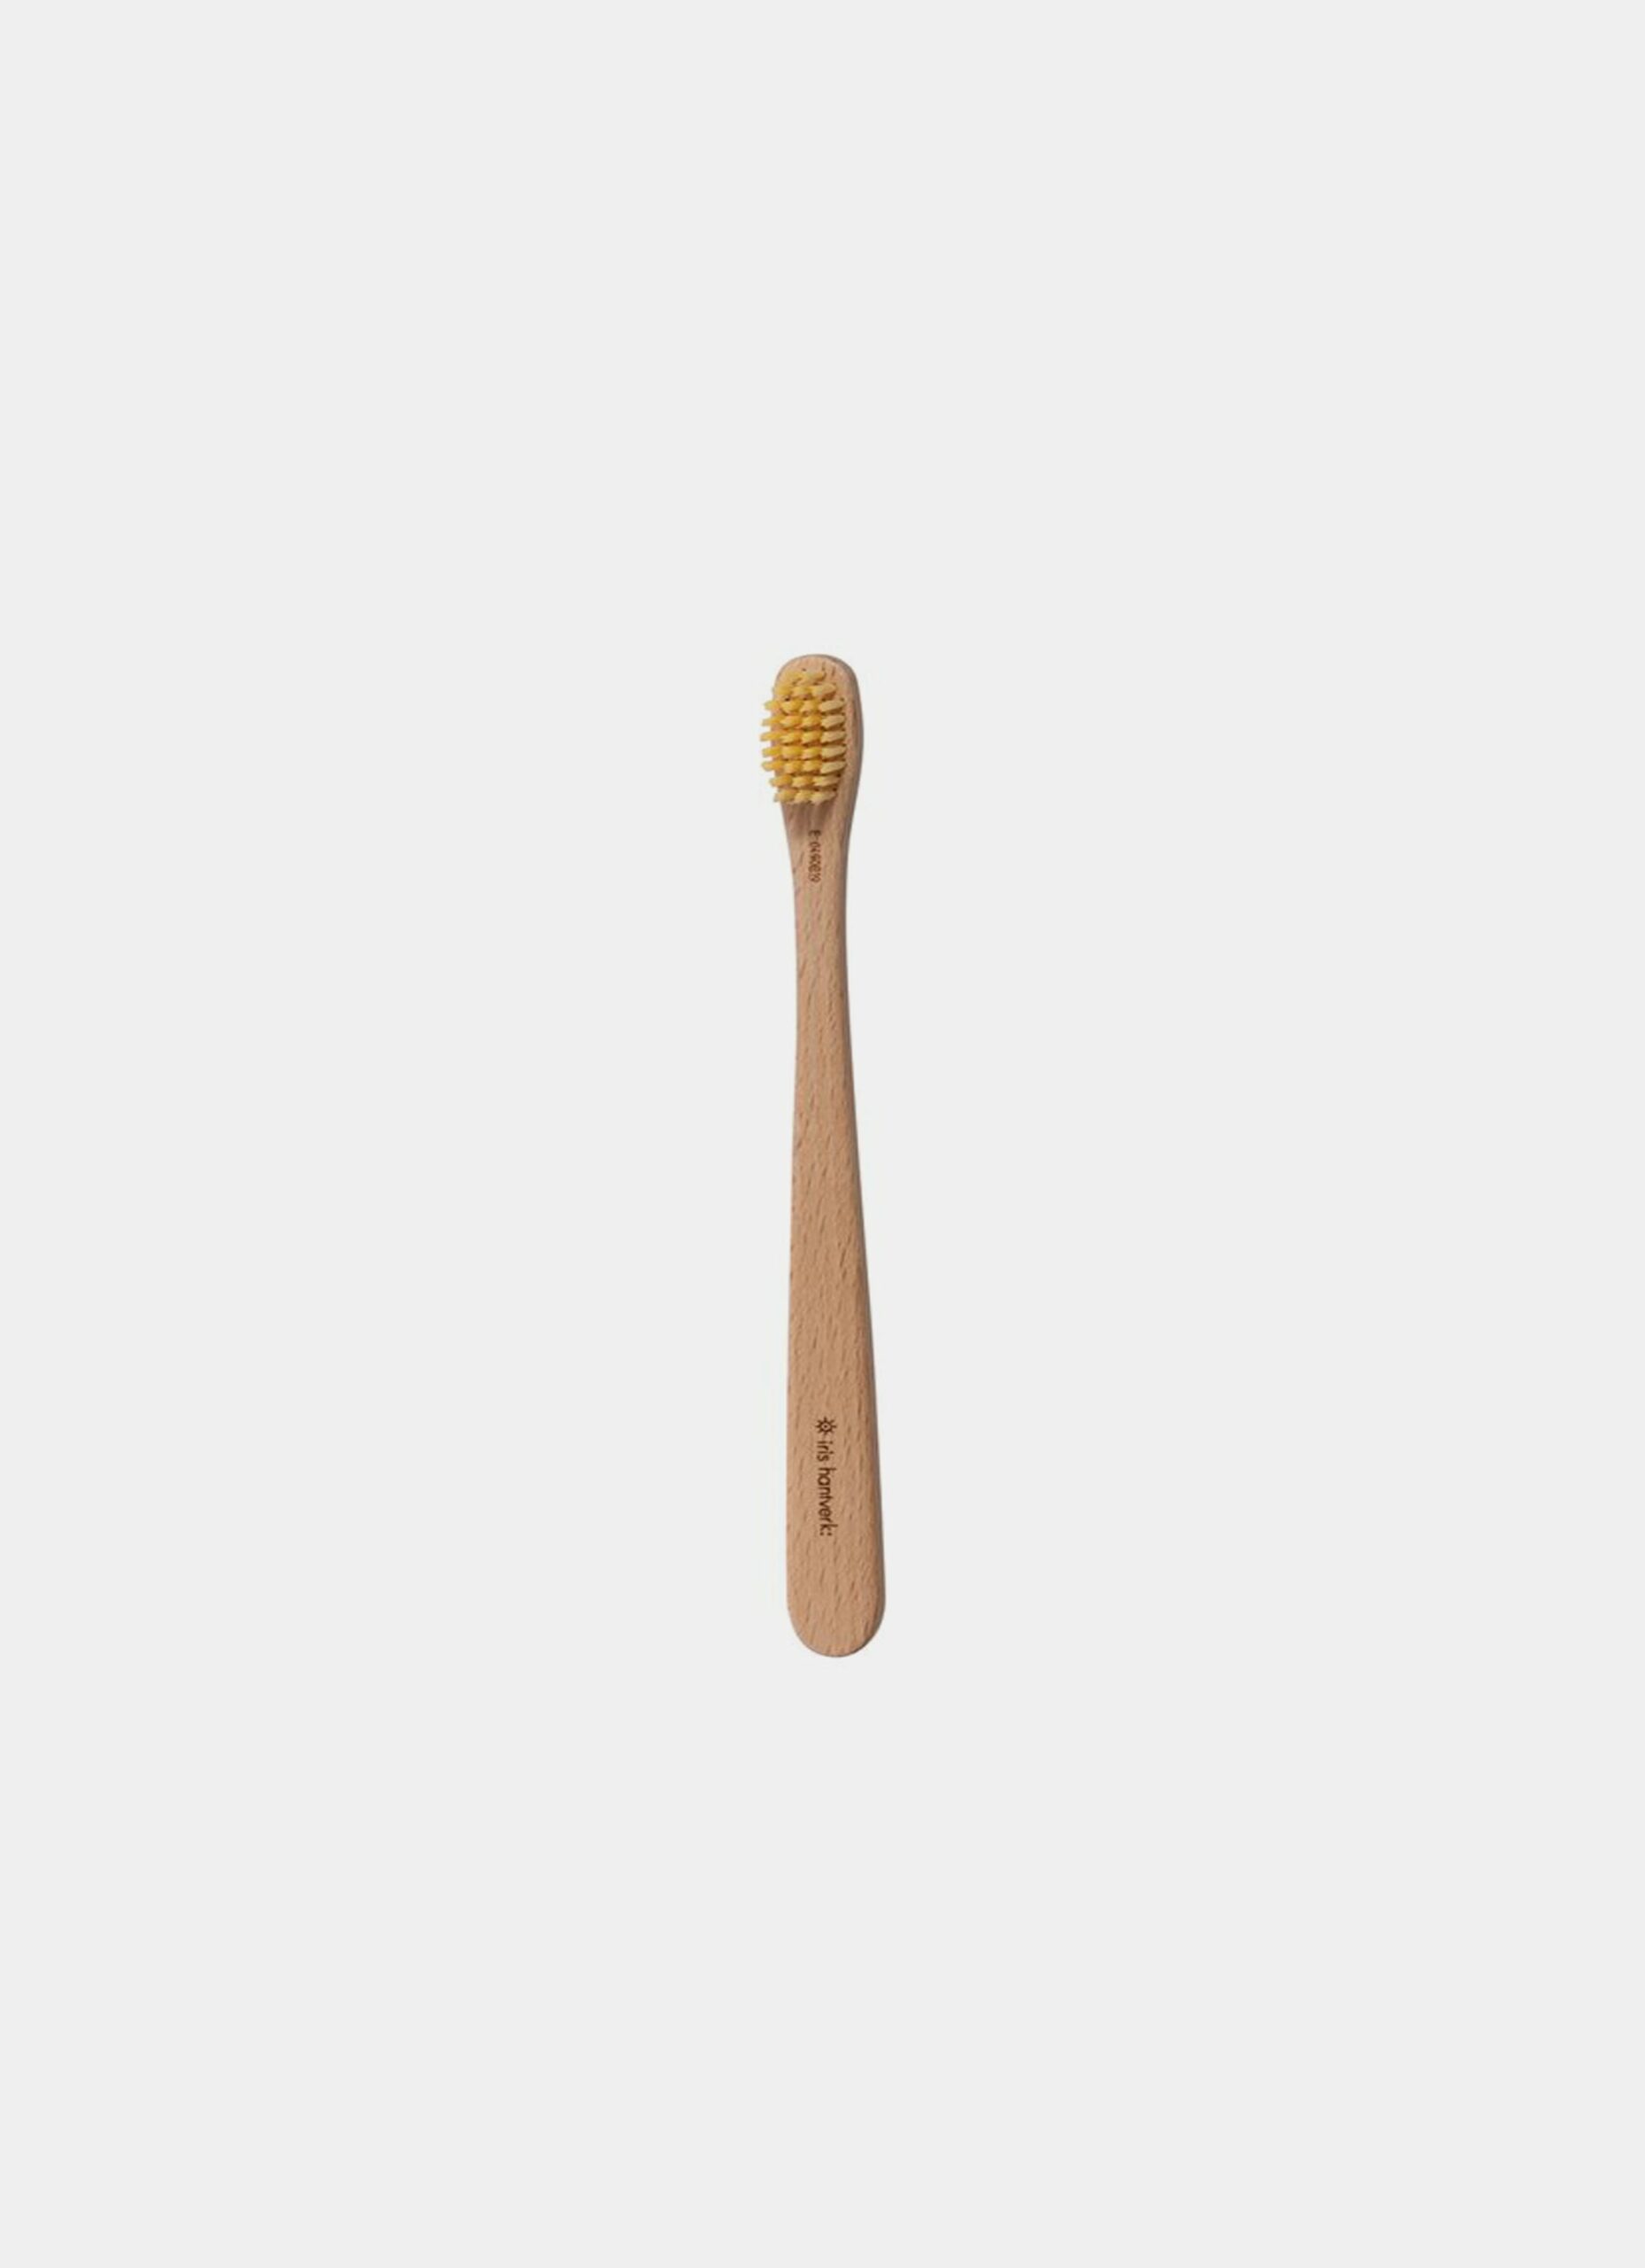 Iris Hantverk - Toothbrush - Bio-based bristle